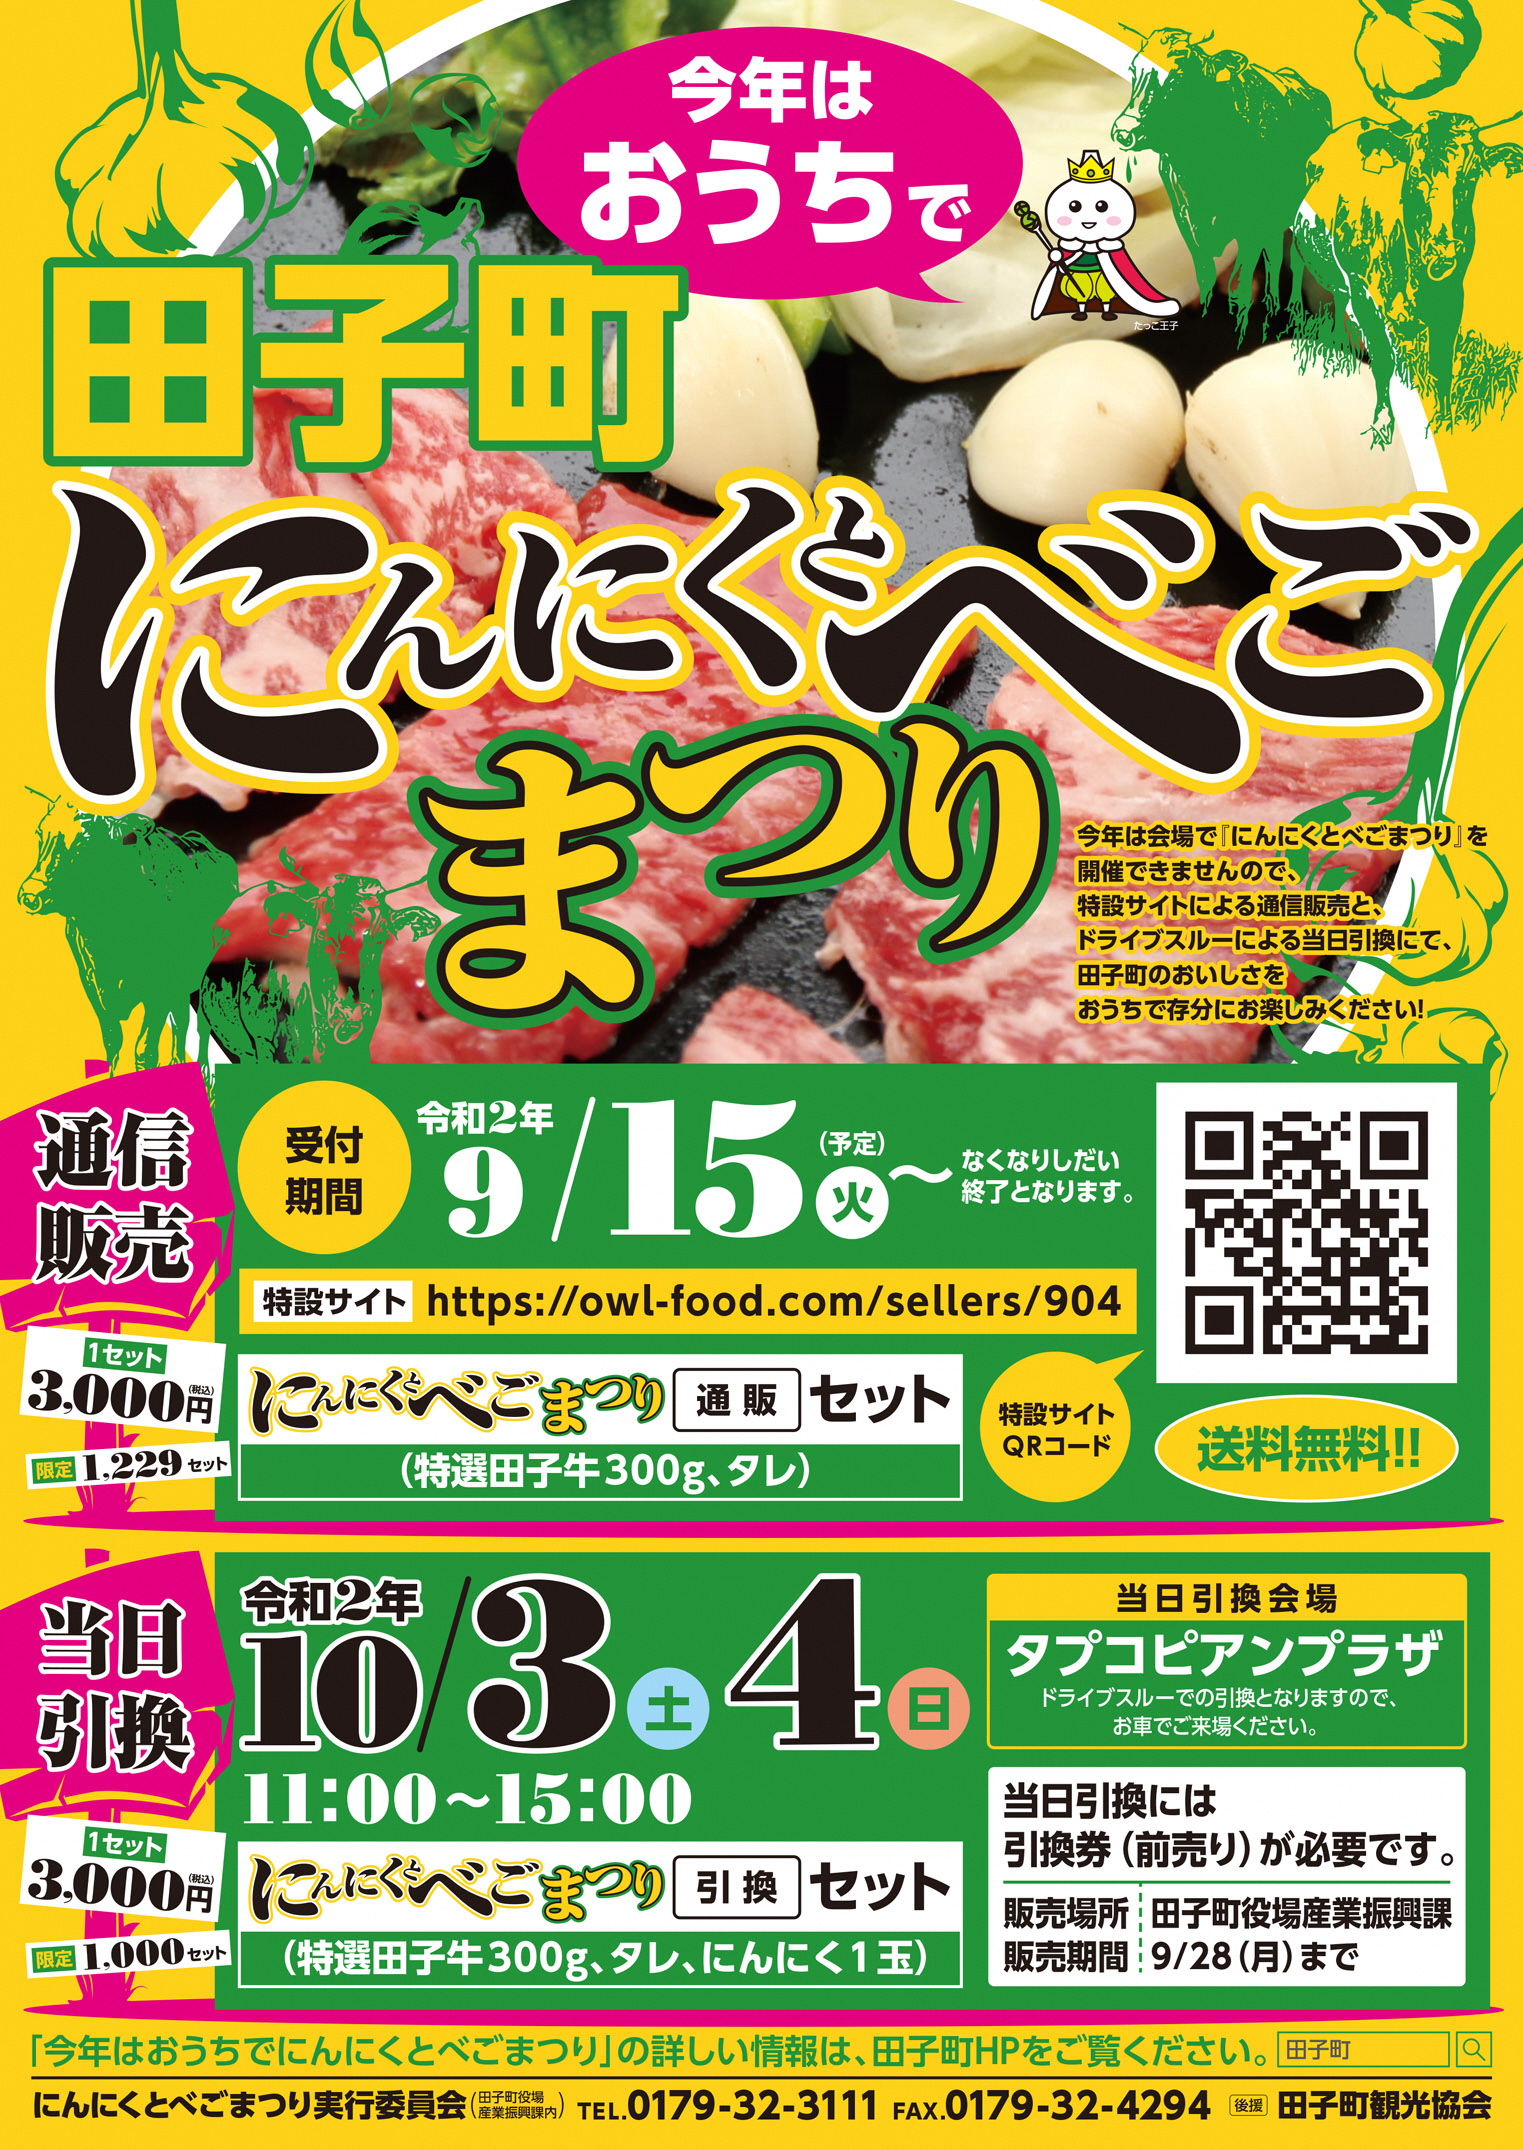 青森県田子町 今年はおうちで田子町にんにくとべごまつり 9月17日からネット販売がスタート 日本で最も美しい村 連合